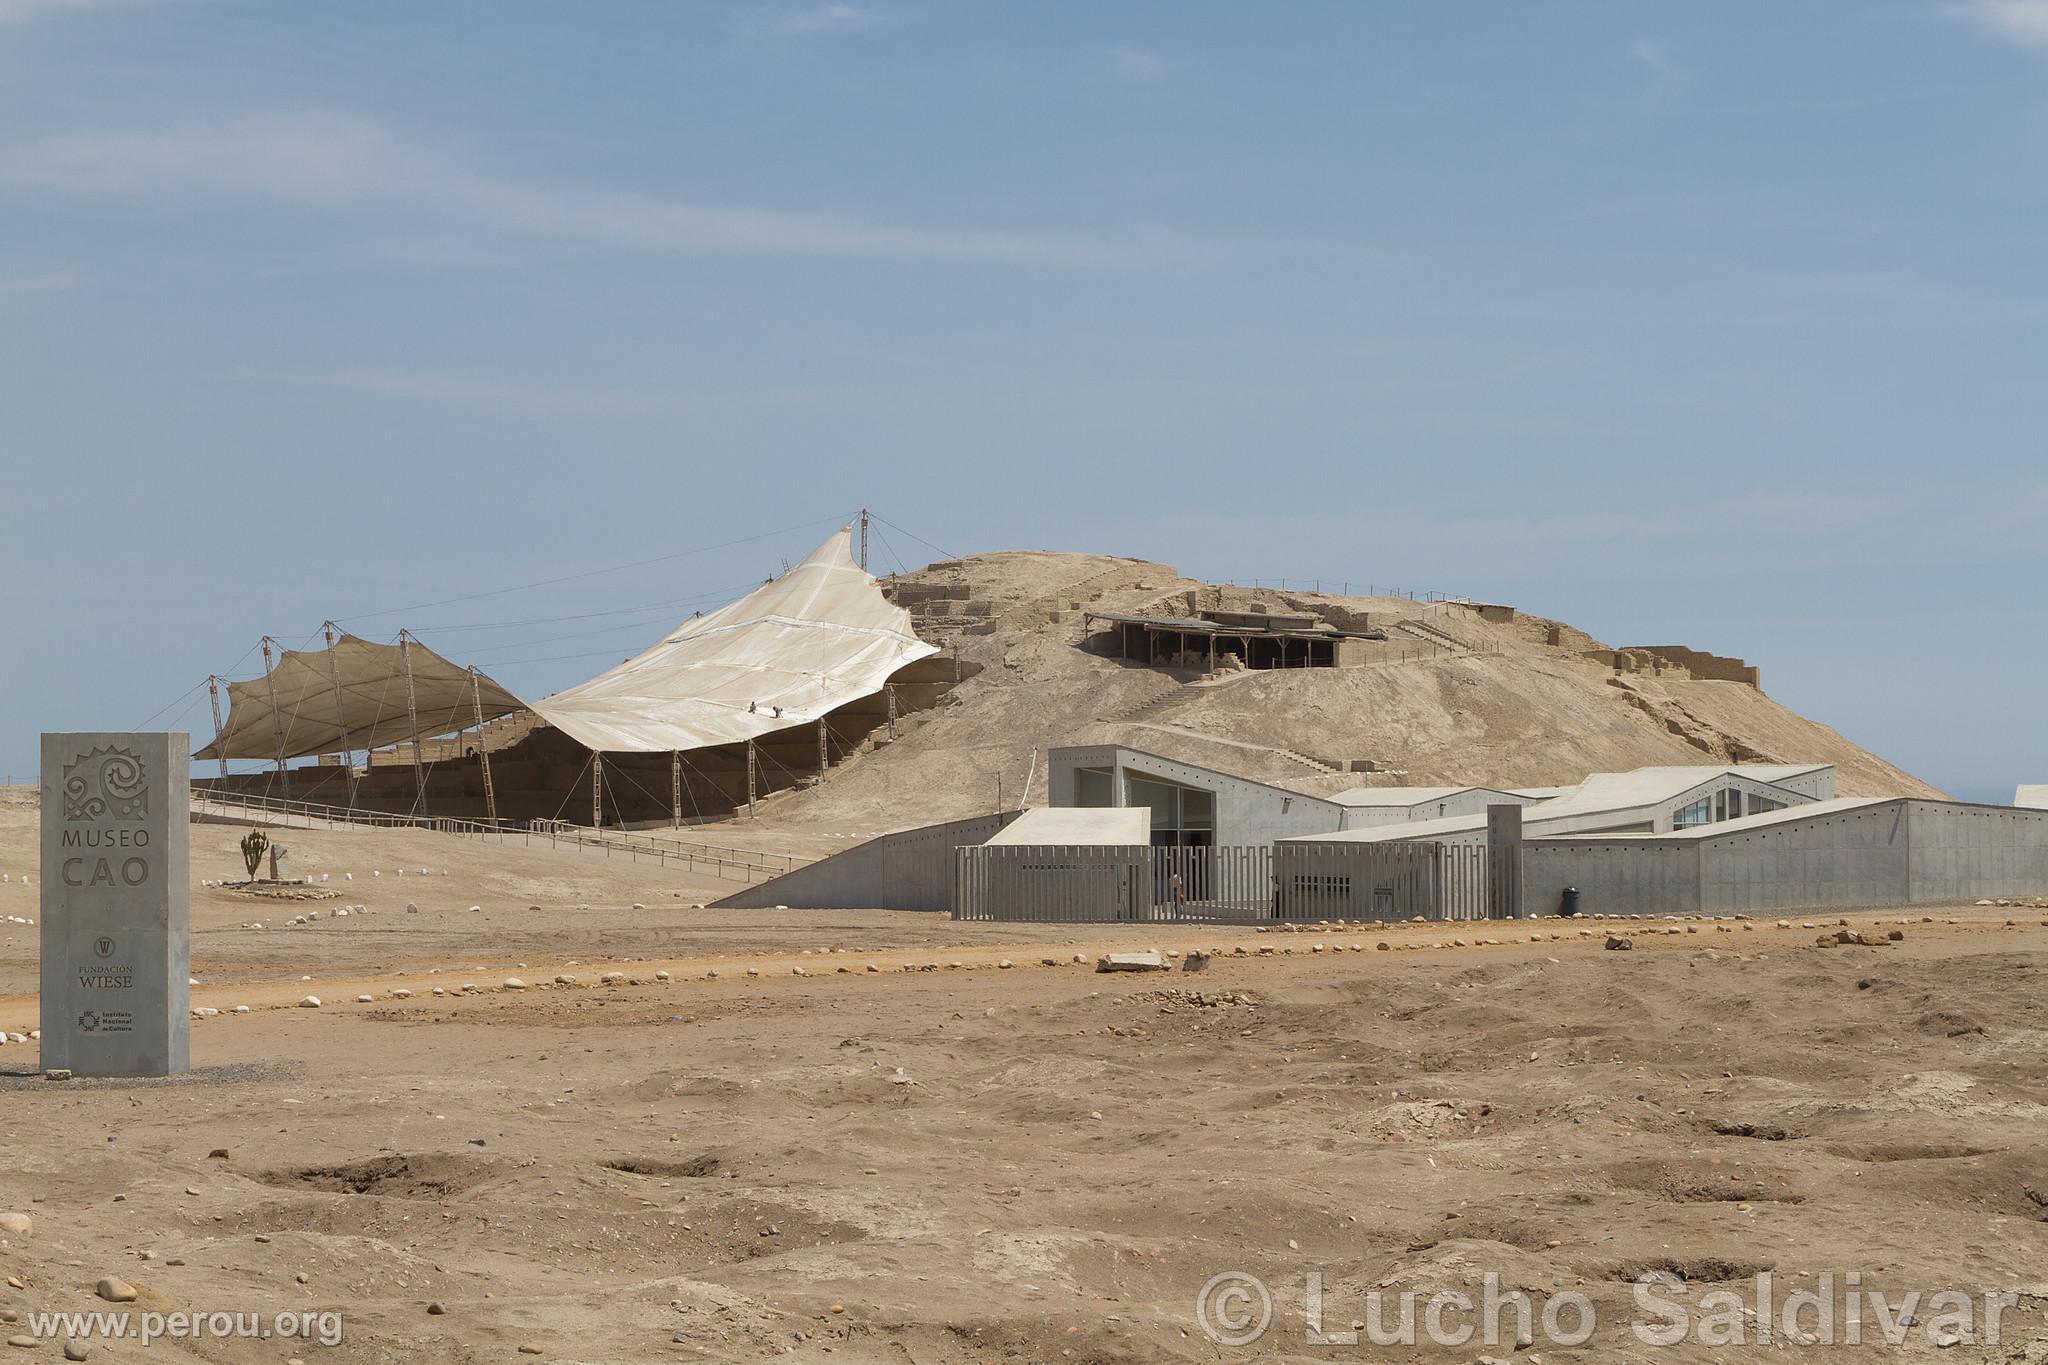 Complexe archologique El Brujo et Muse Cao, Trujillo